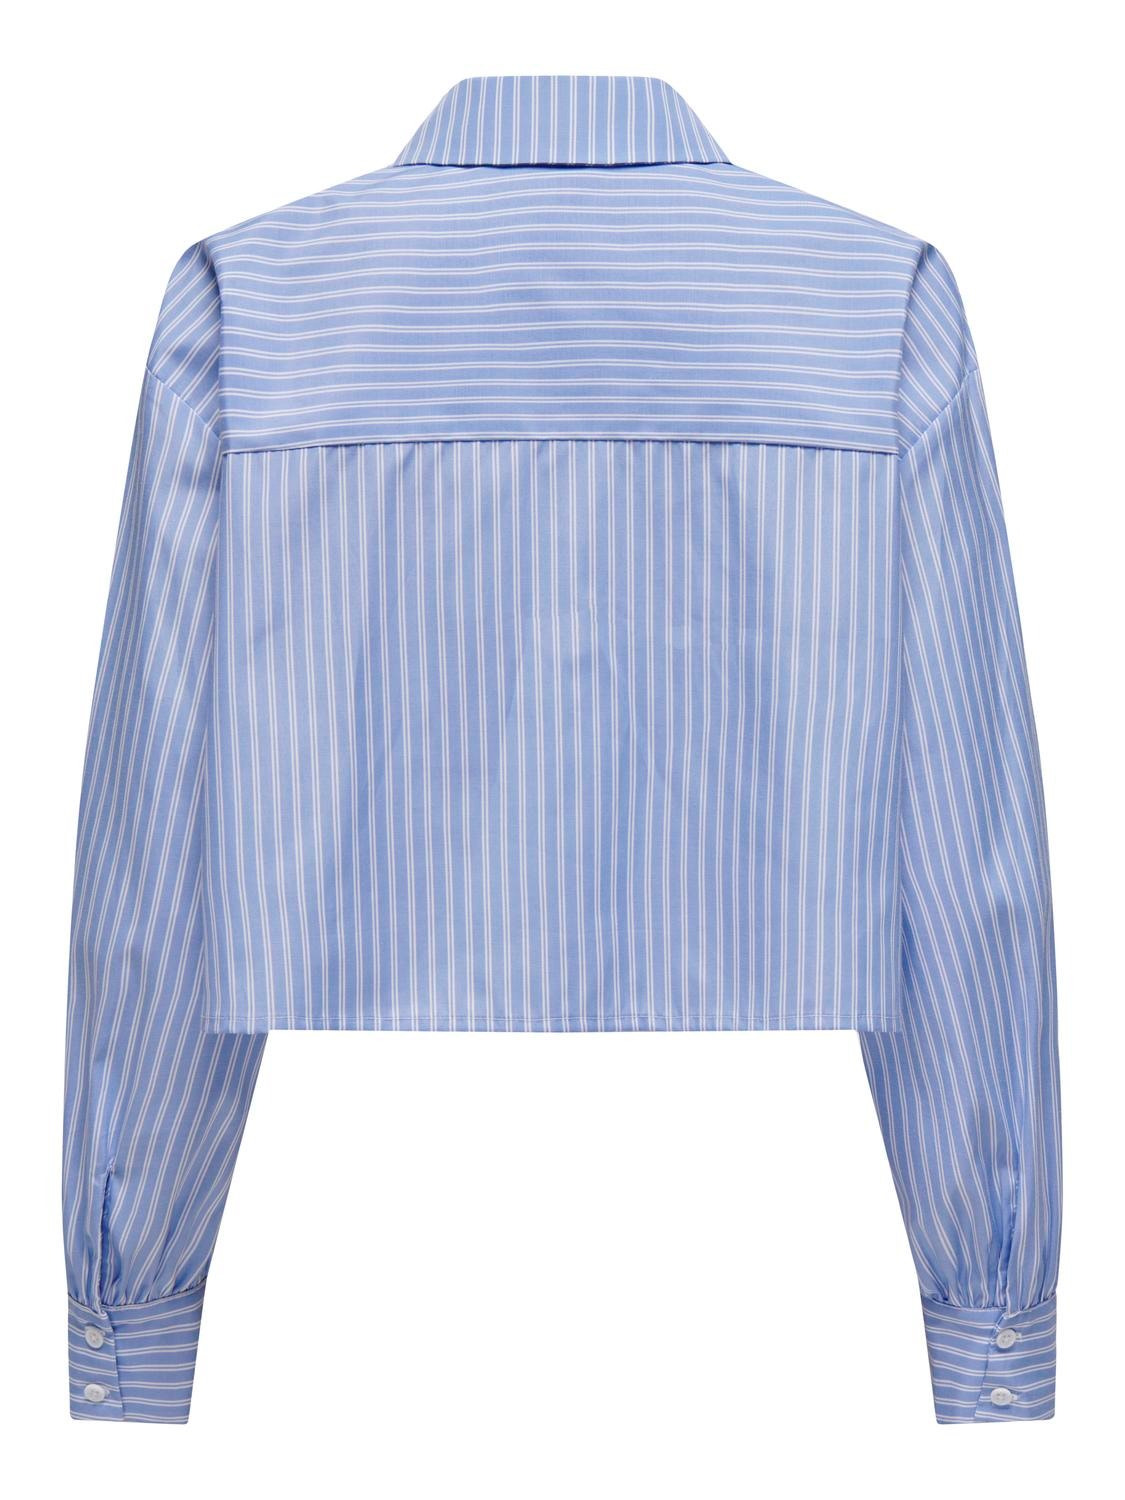 ONLY Camisas Corte regular Cuello de camisa Puños abotonados -Angel Falls - 15327688